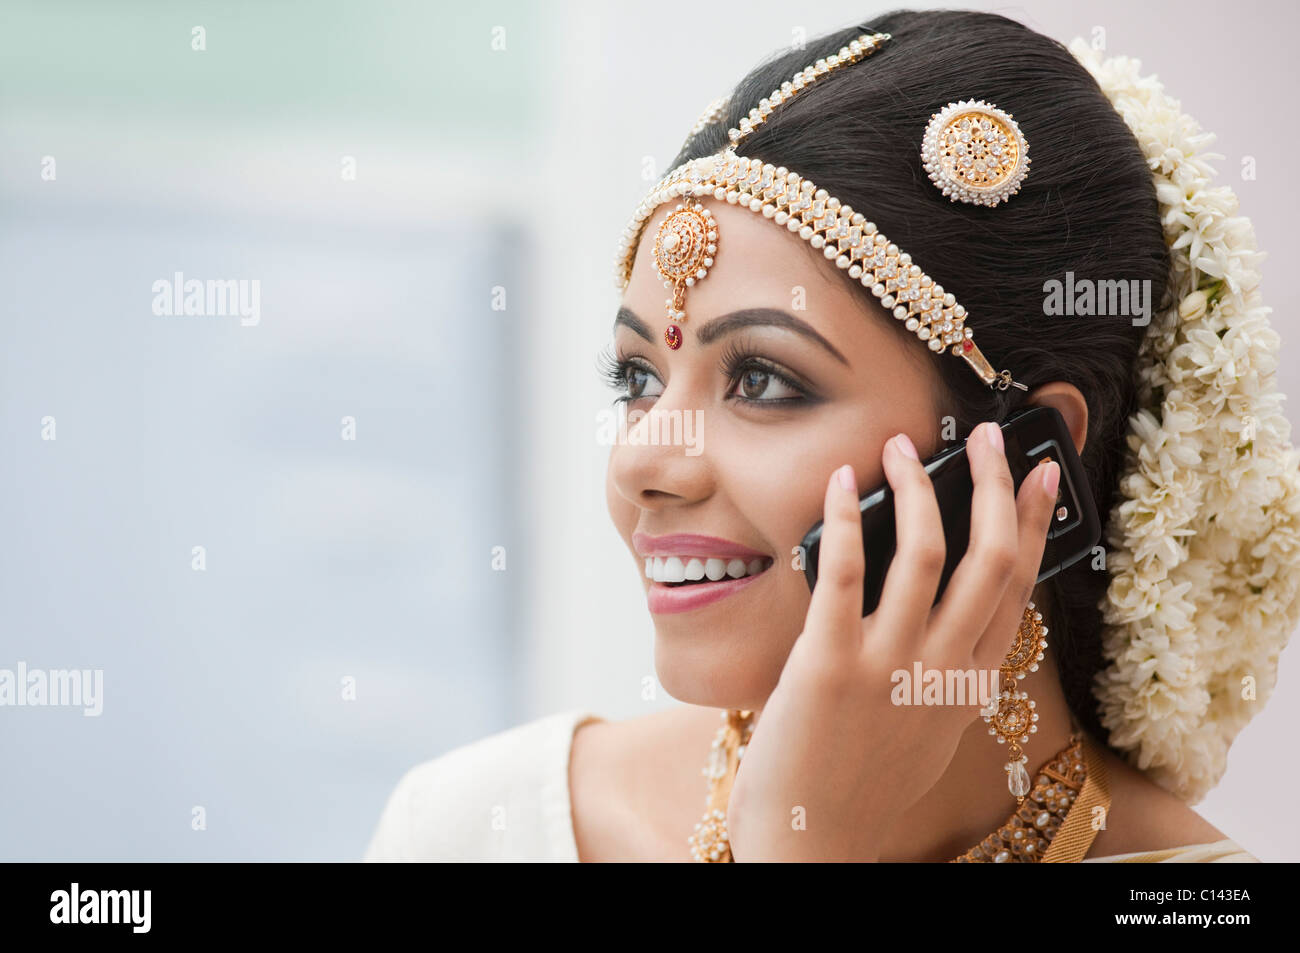 Braut in traditionellen südindischen dress telefonieren mit einem Handy Stockfoto